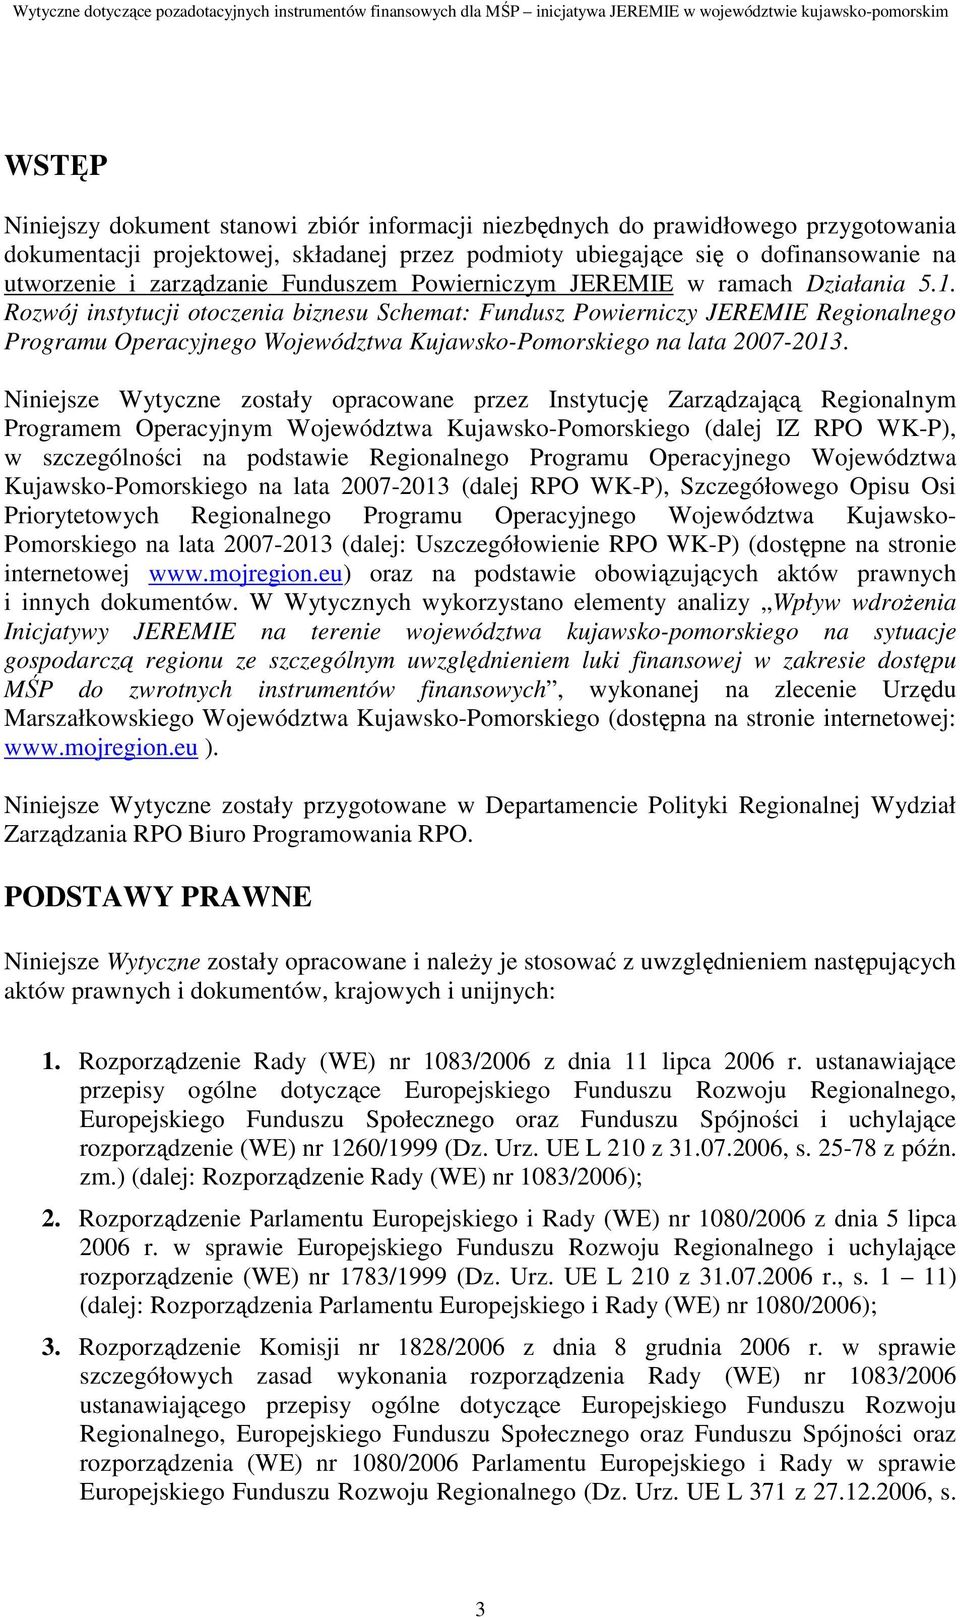 Rozwój instytucji otoczenia biznesu Schemat: Fundusz Powierniczy JEREMIE Regionalnego Programu Operacyjnego Województwa Kujawsko-Pomorskiego na lata 2007-2013.